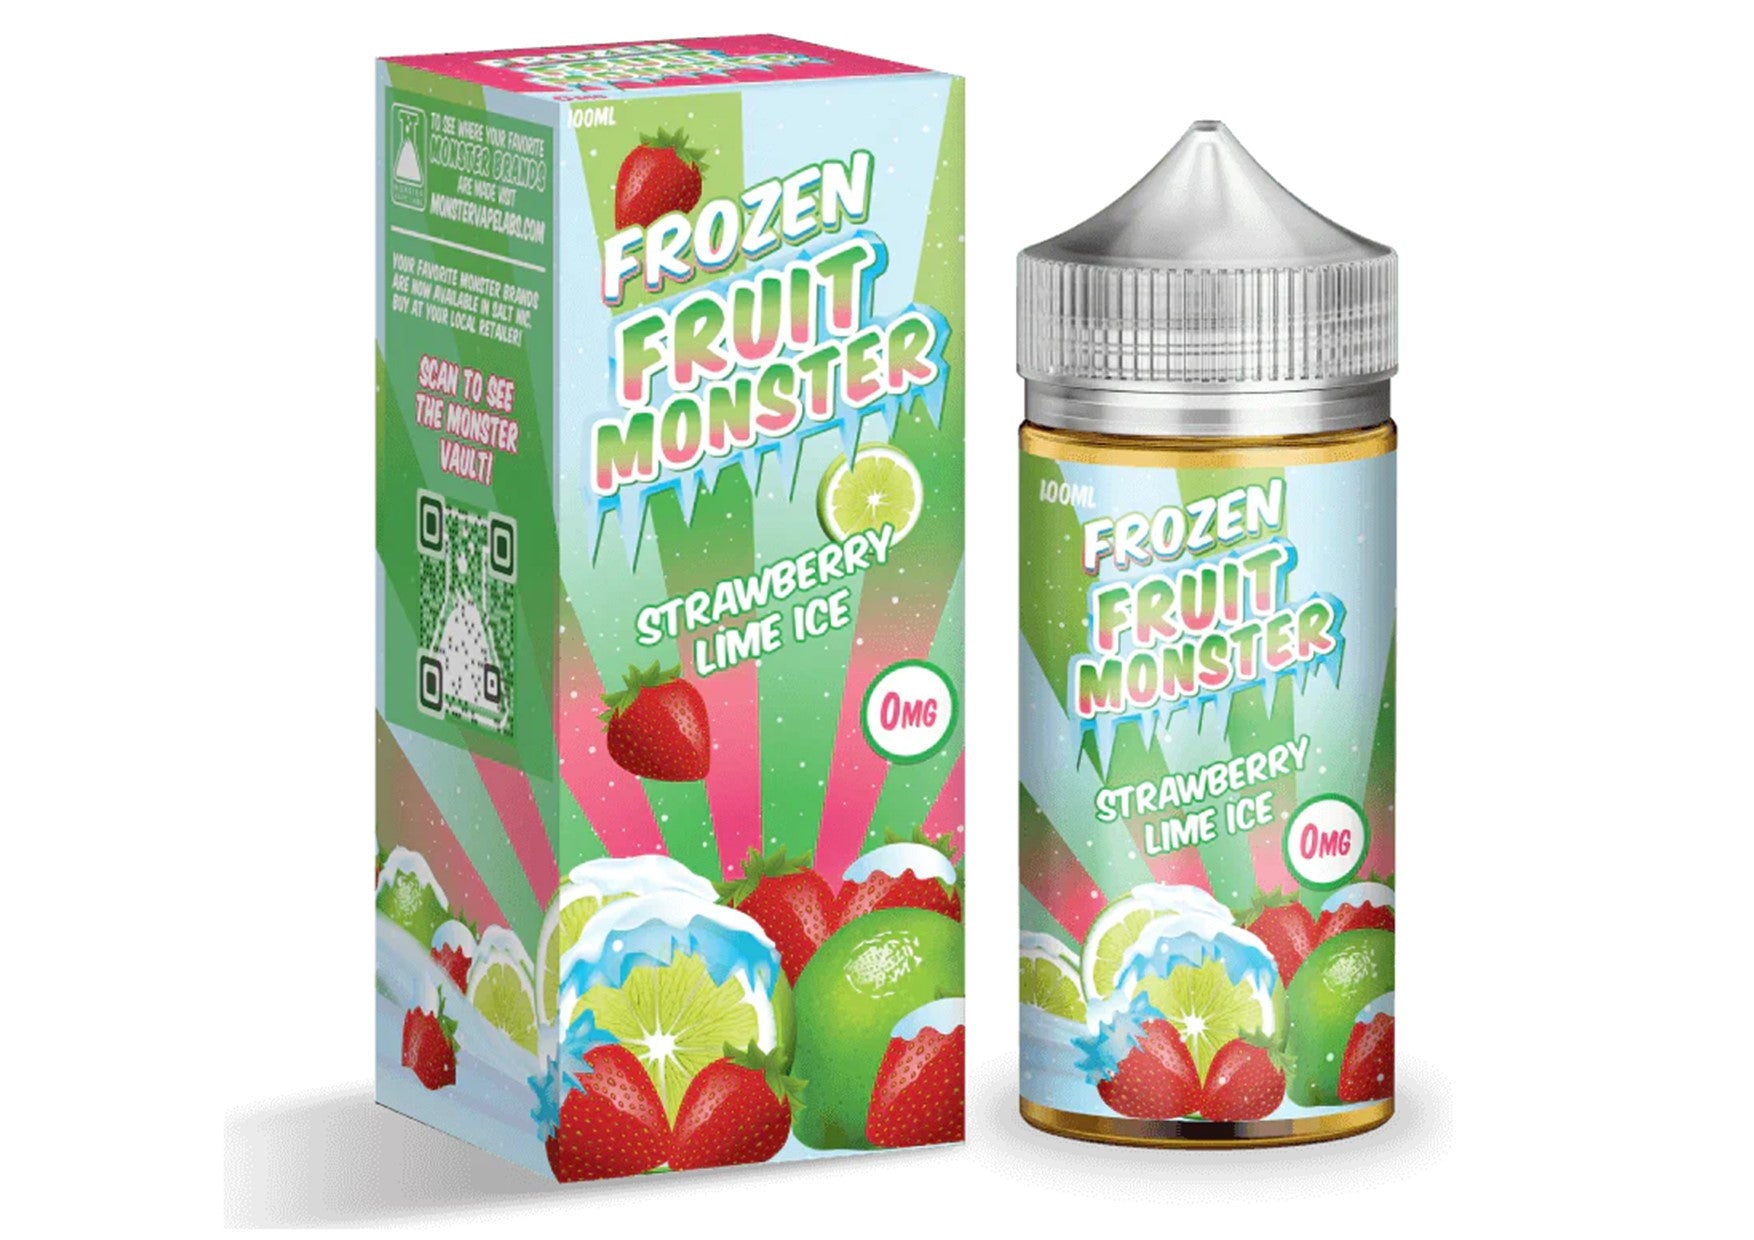 Frozen Fruit Monster | Strawberry Lime